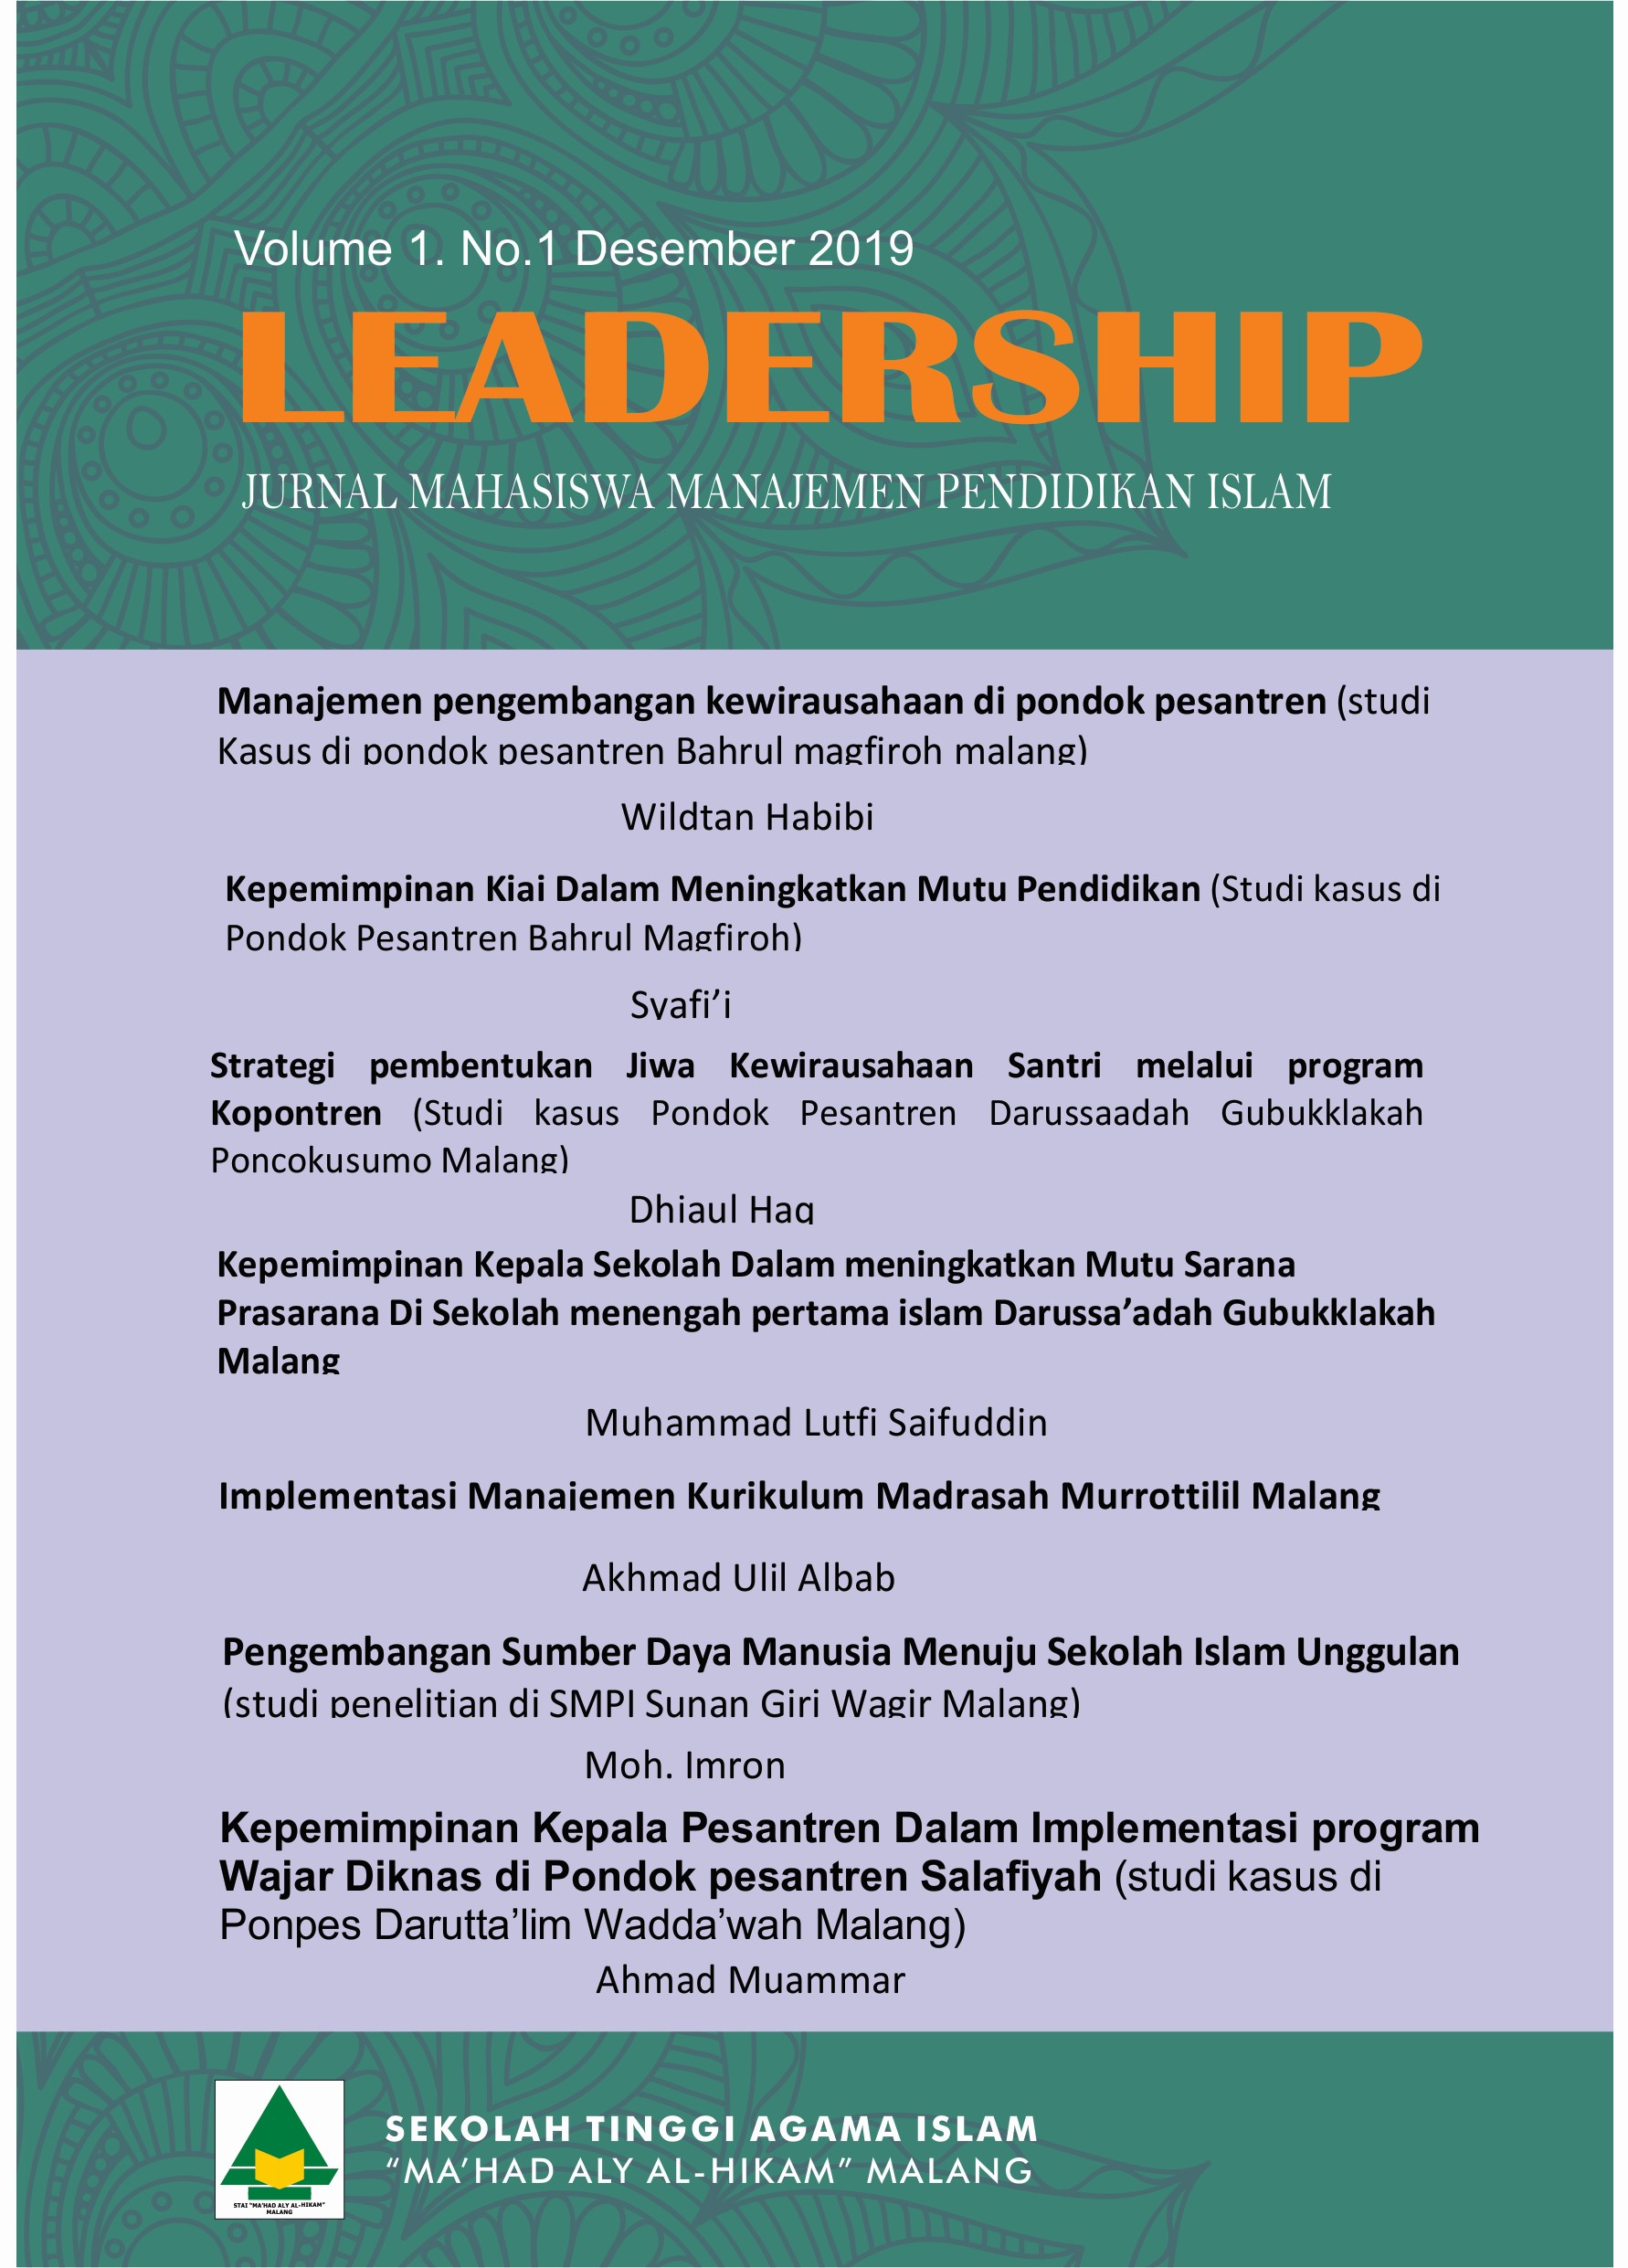 Leadership: Jurnal Mahasiswa Manajemen Pendidikan Islam